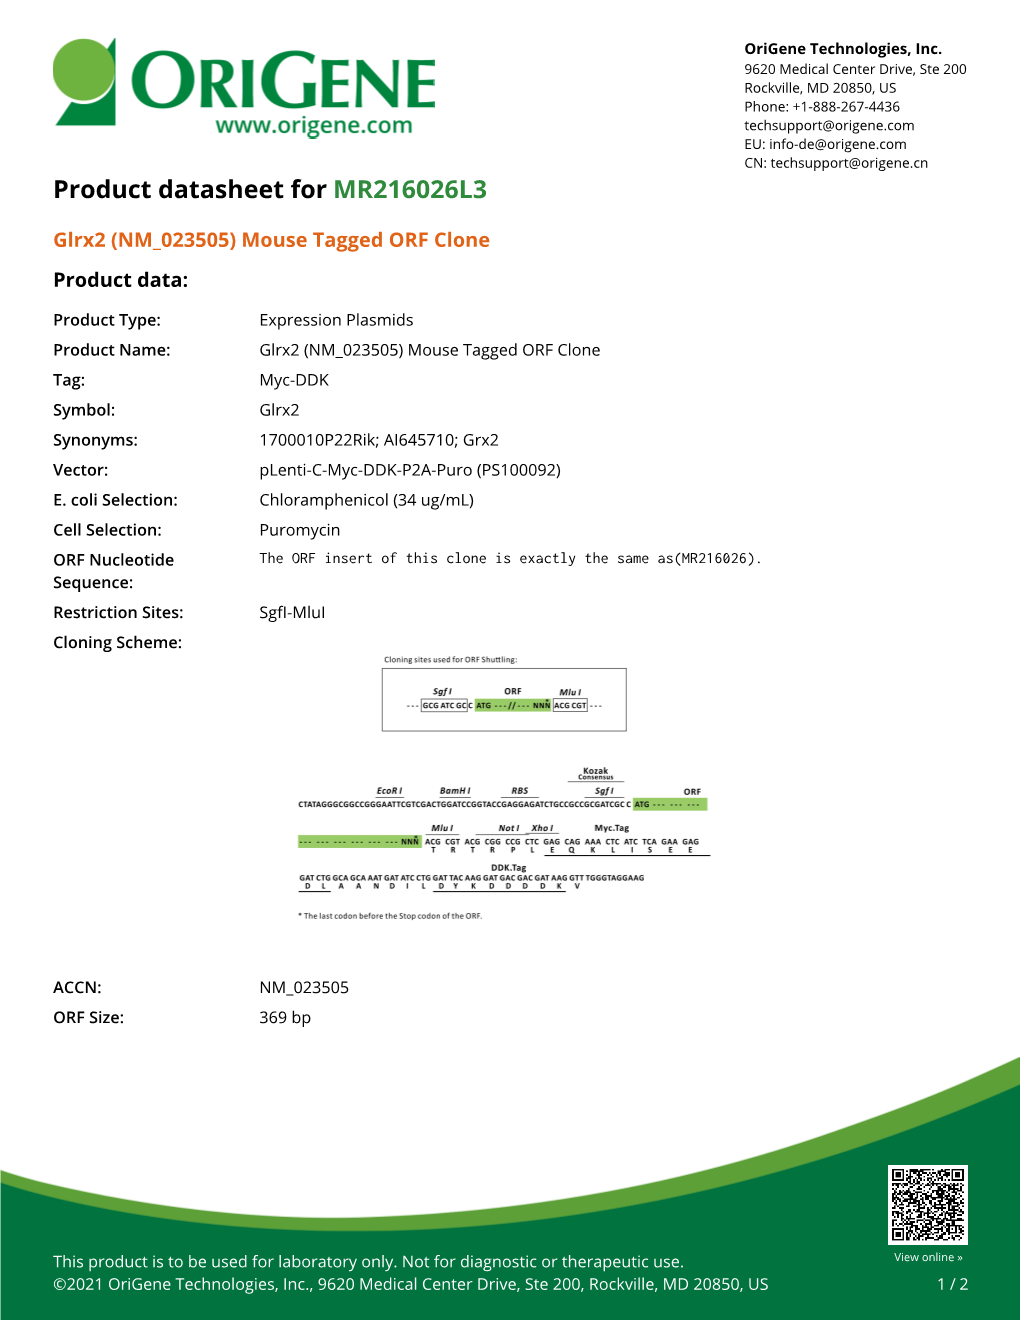 Glrx2 (NM 023505) Mouse Tagged ORF Clone – MR216026L3 | Origene